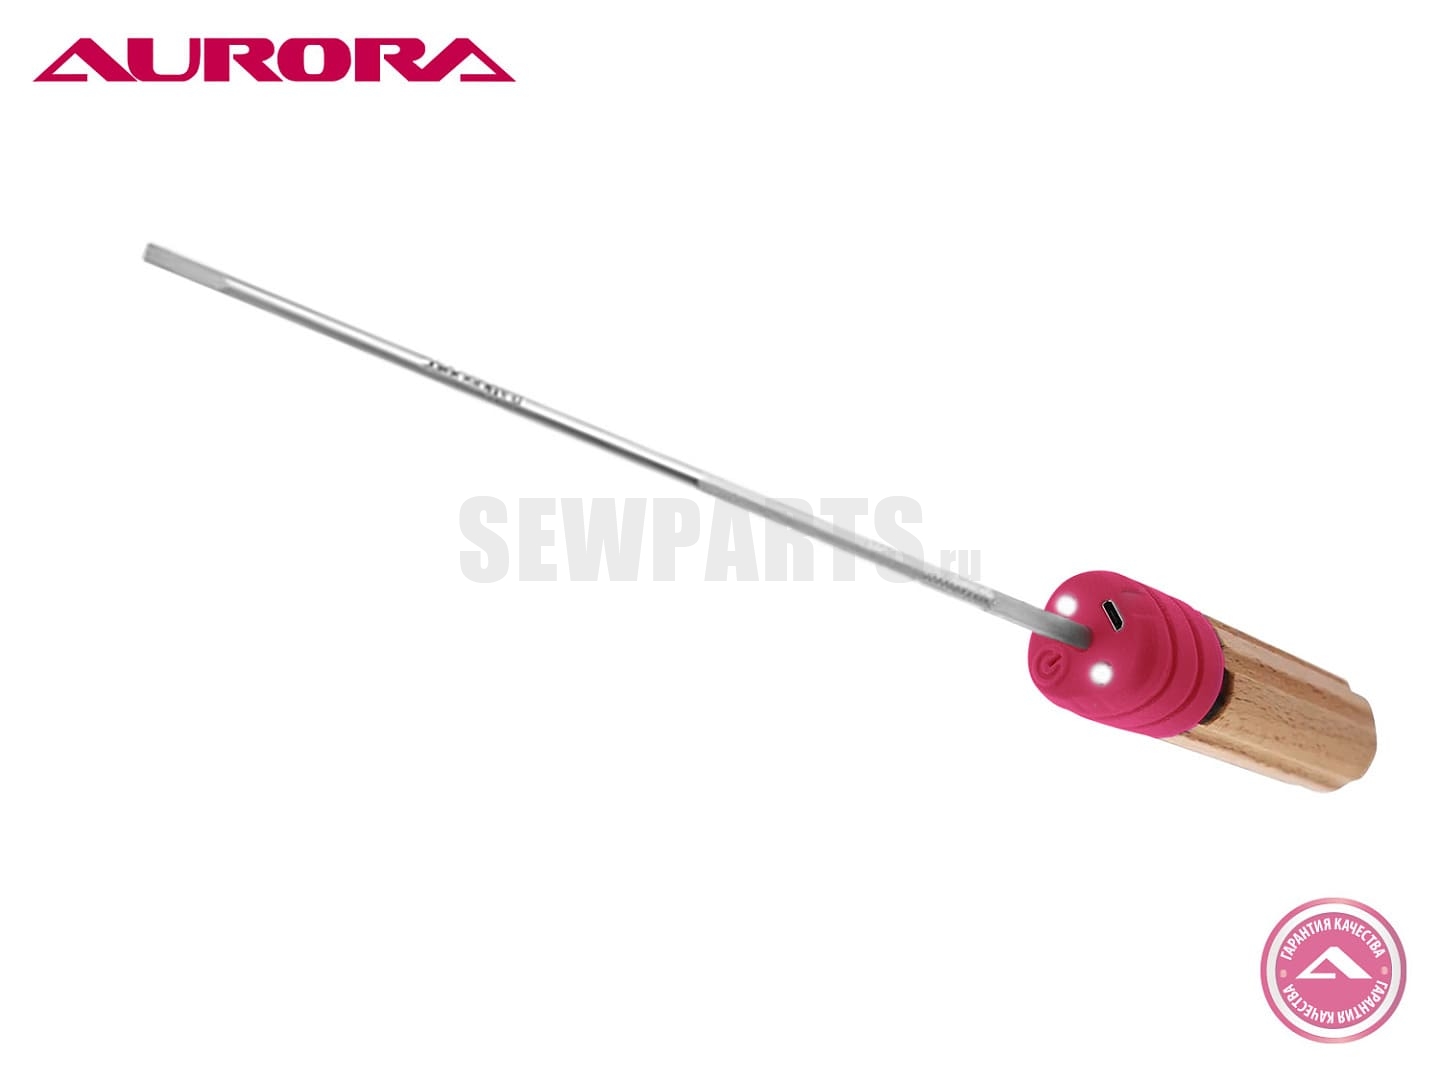 Отвёртка плоская для швейной машины Aurora SD10-5, 10 дюймов (255 мм)